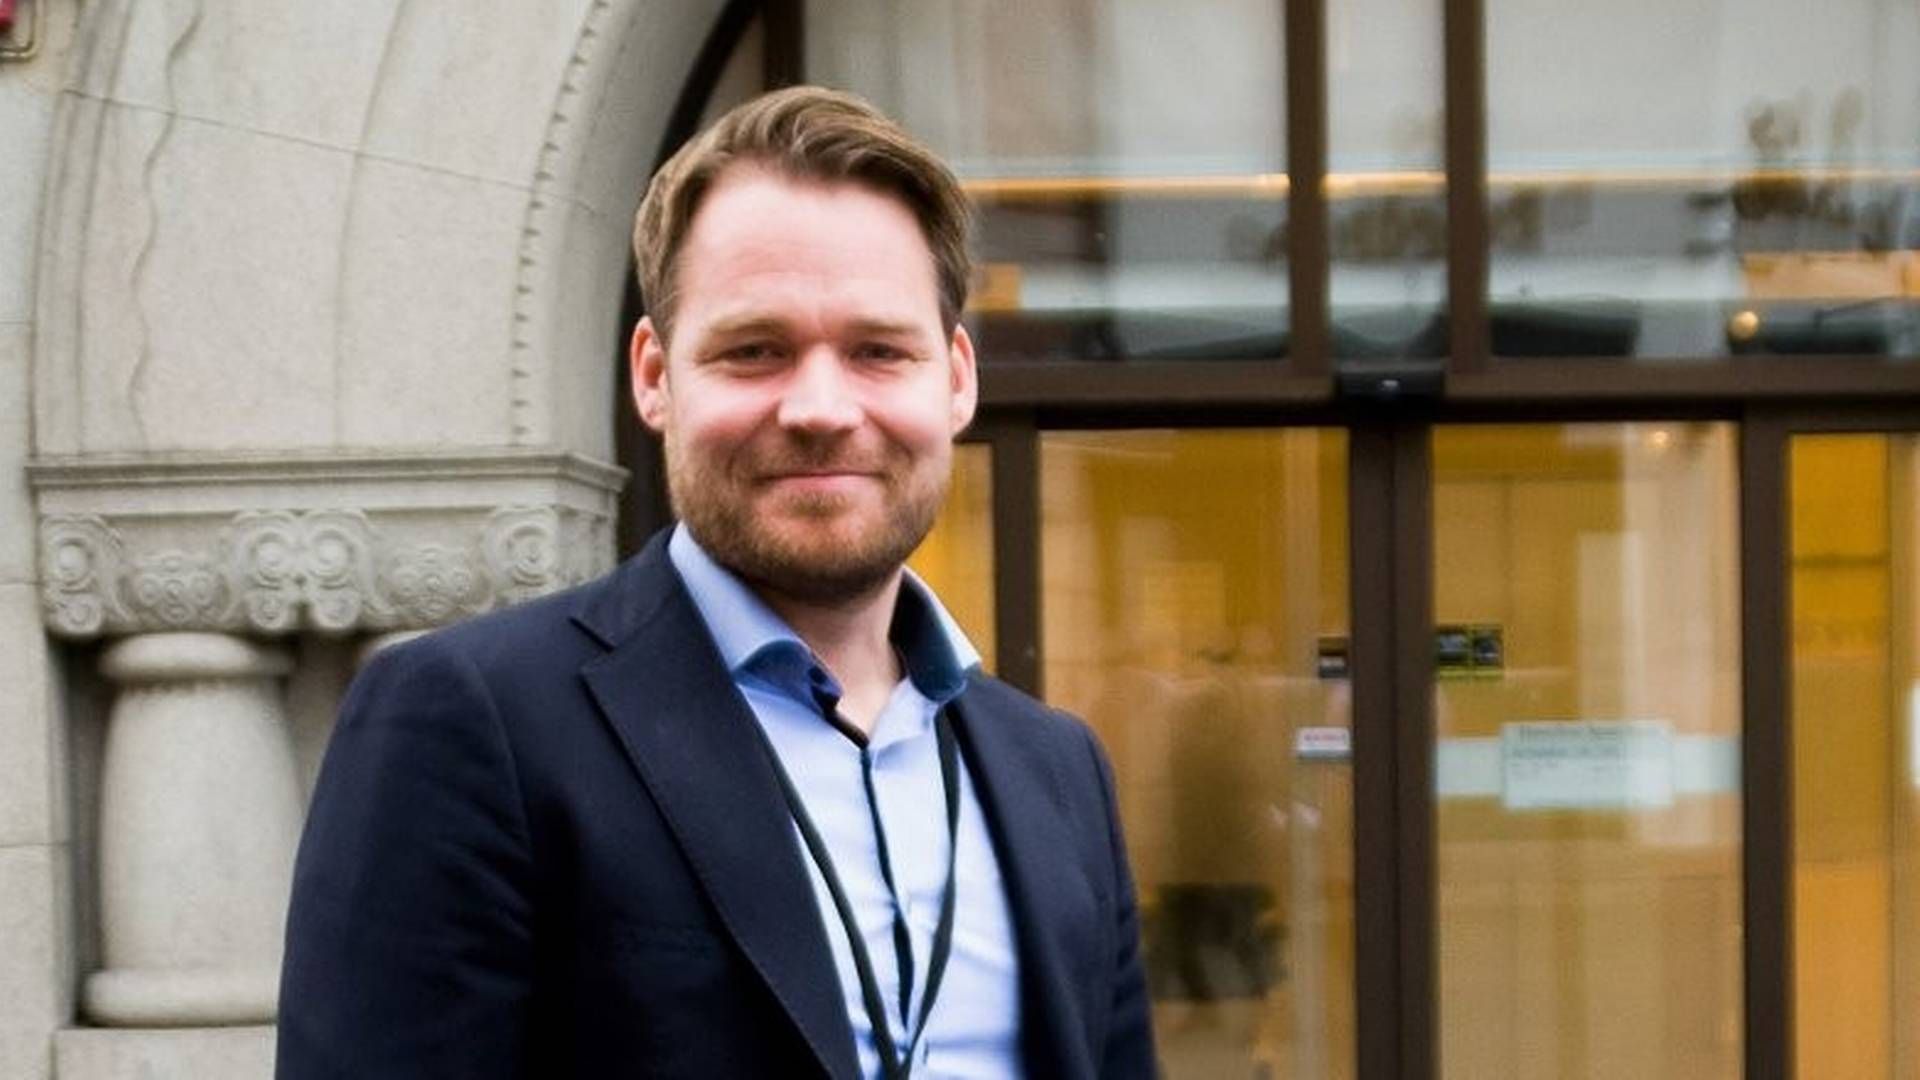 NY VURDERING: Finanssjef i Skue Sparebank, Torgeir Nøkleby.